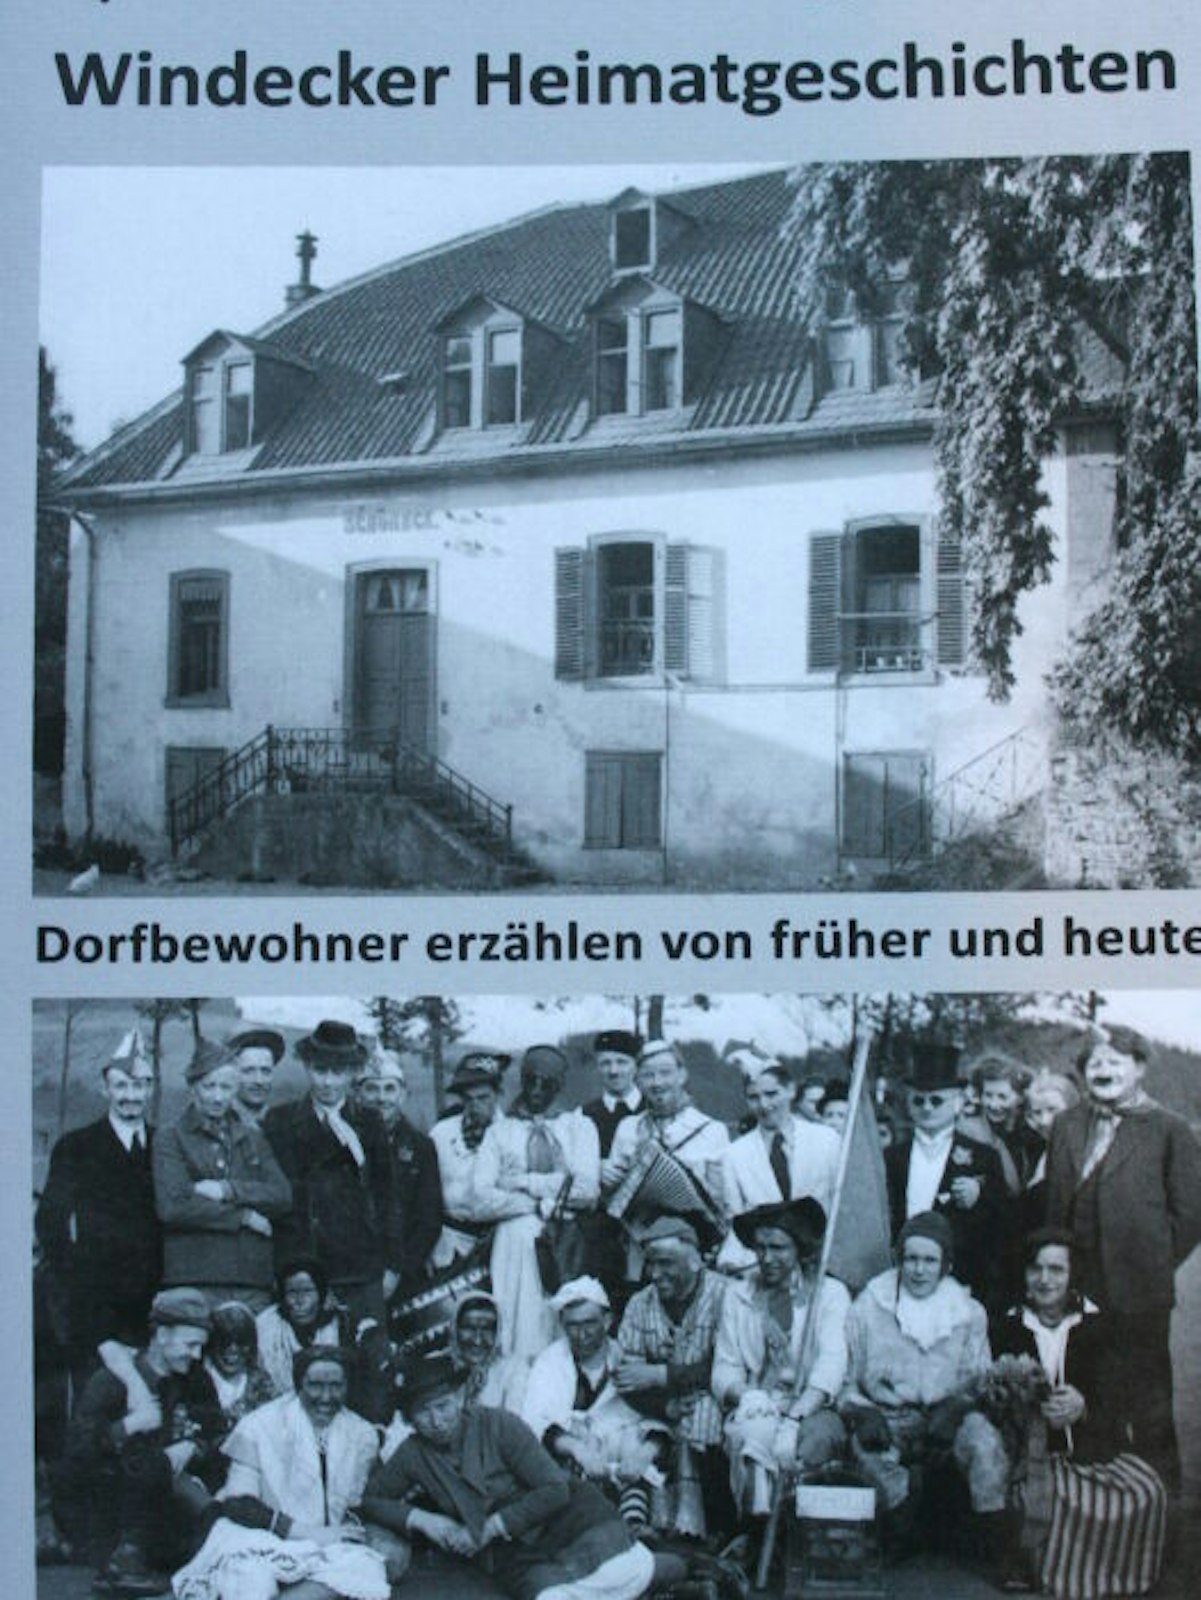 Alte Bilder vom früheren Hof Gauchel in Schöneck und vom Karneval in Schladern.